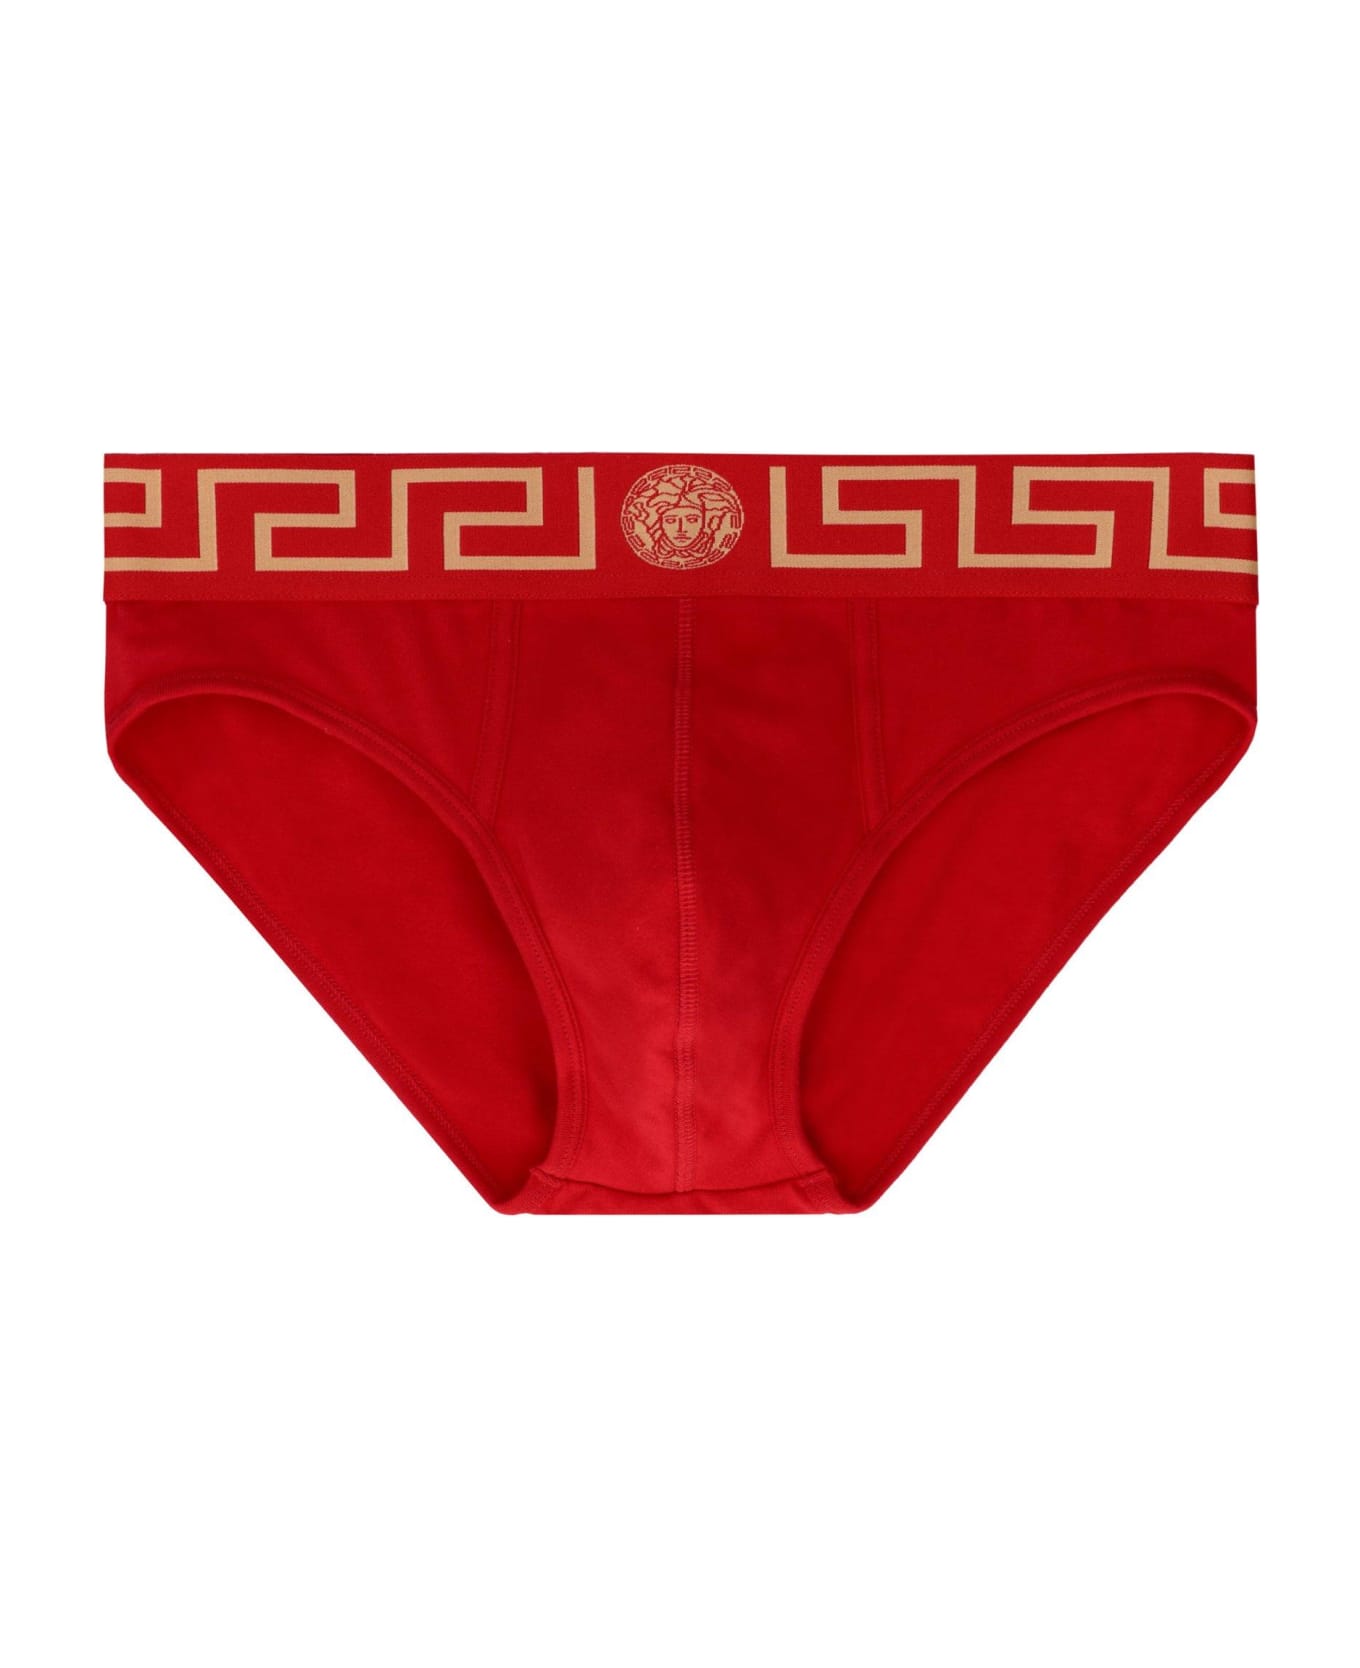 Versace Greca Band Briefs - RED